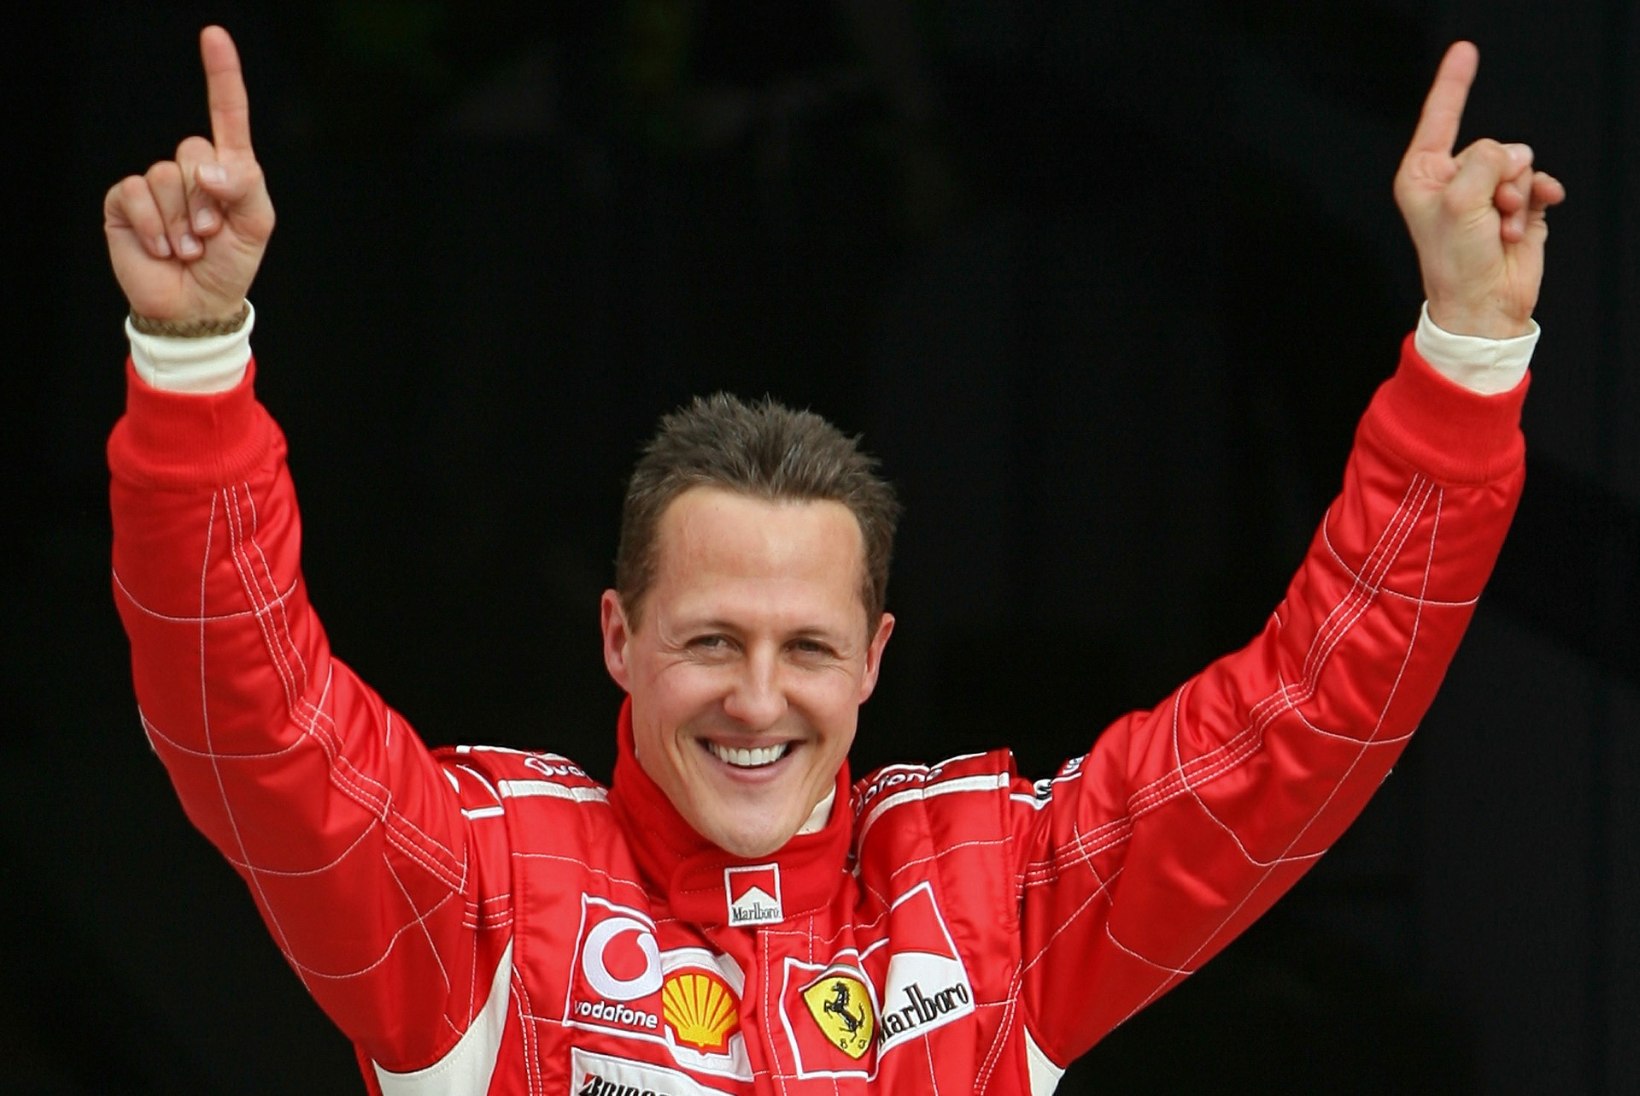 Soome arst: Kui silmad on lahti, ei pruugi see tähendada, et Schumacher on teadvusel